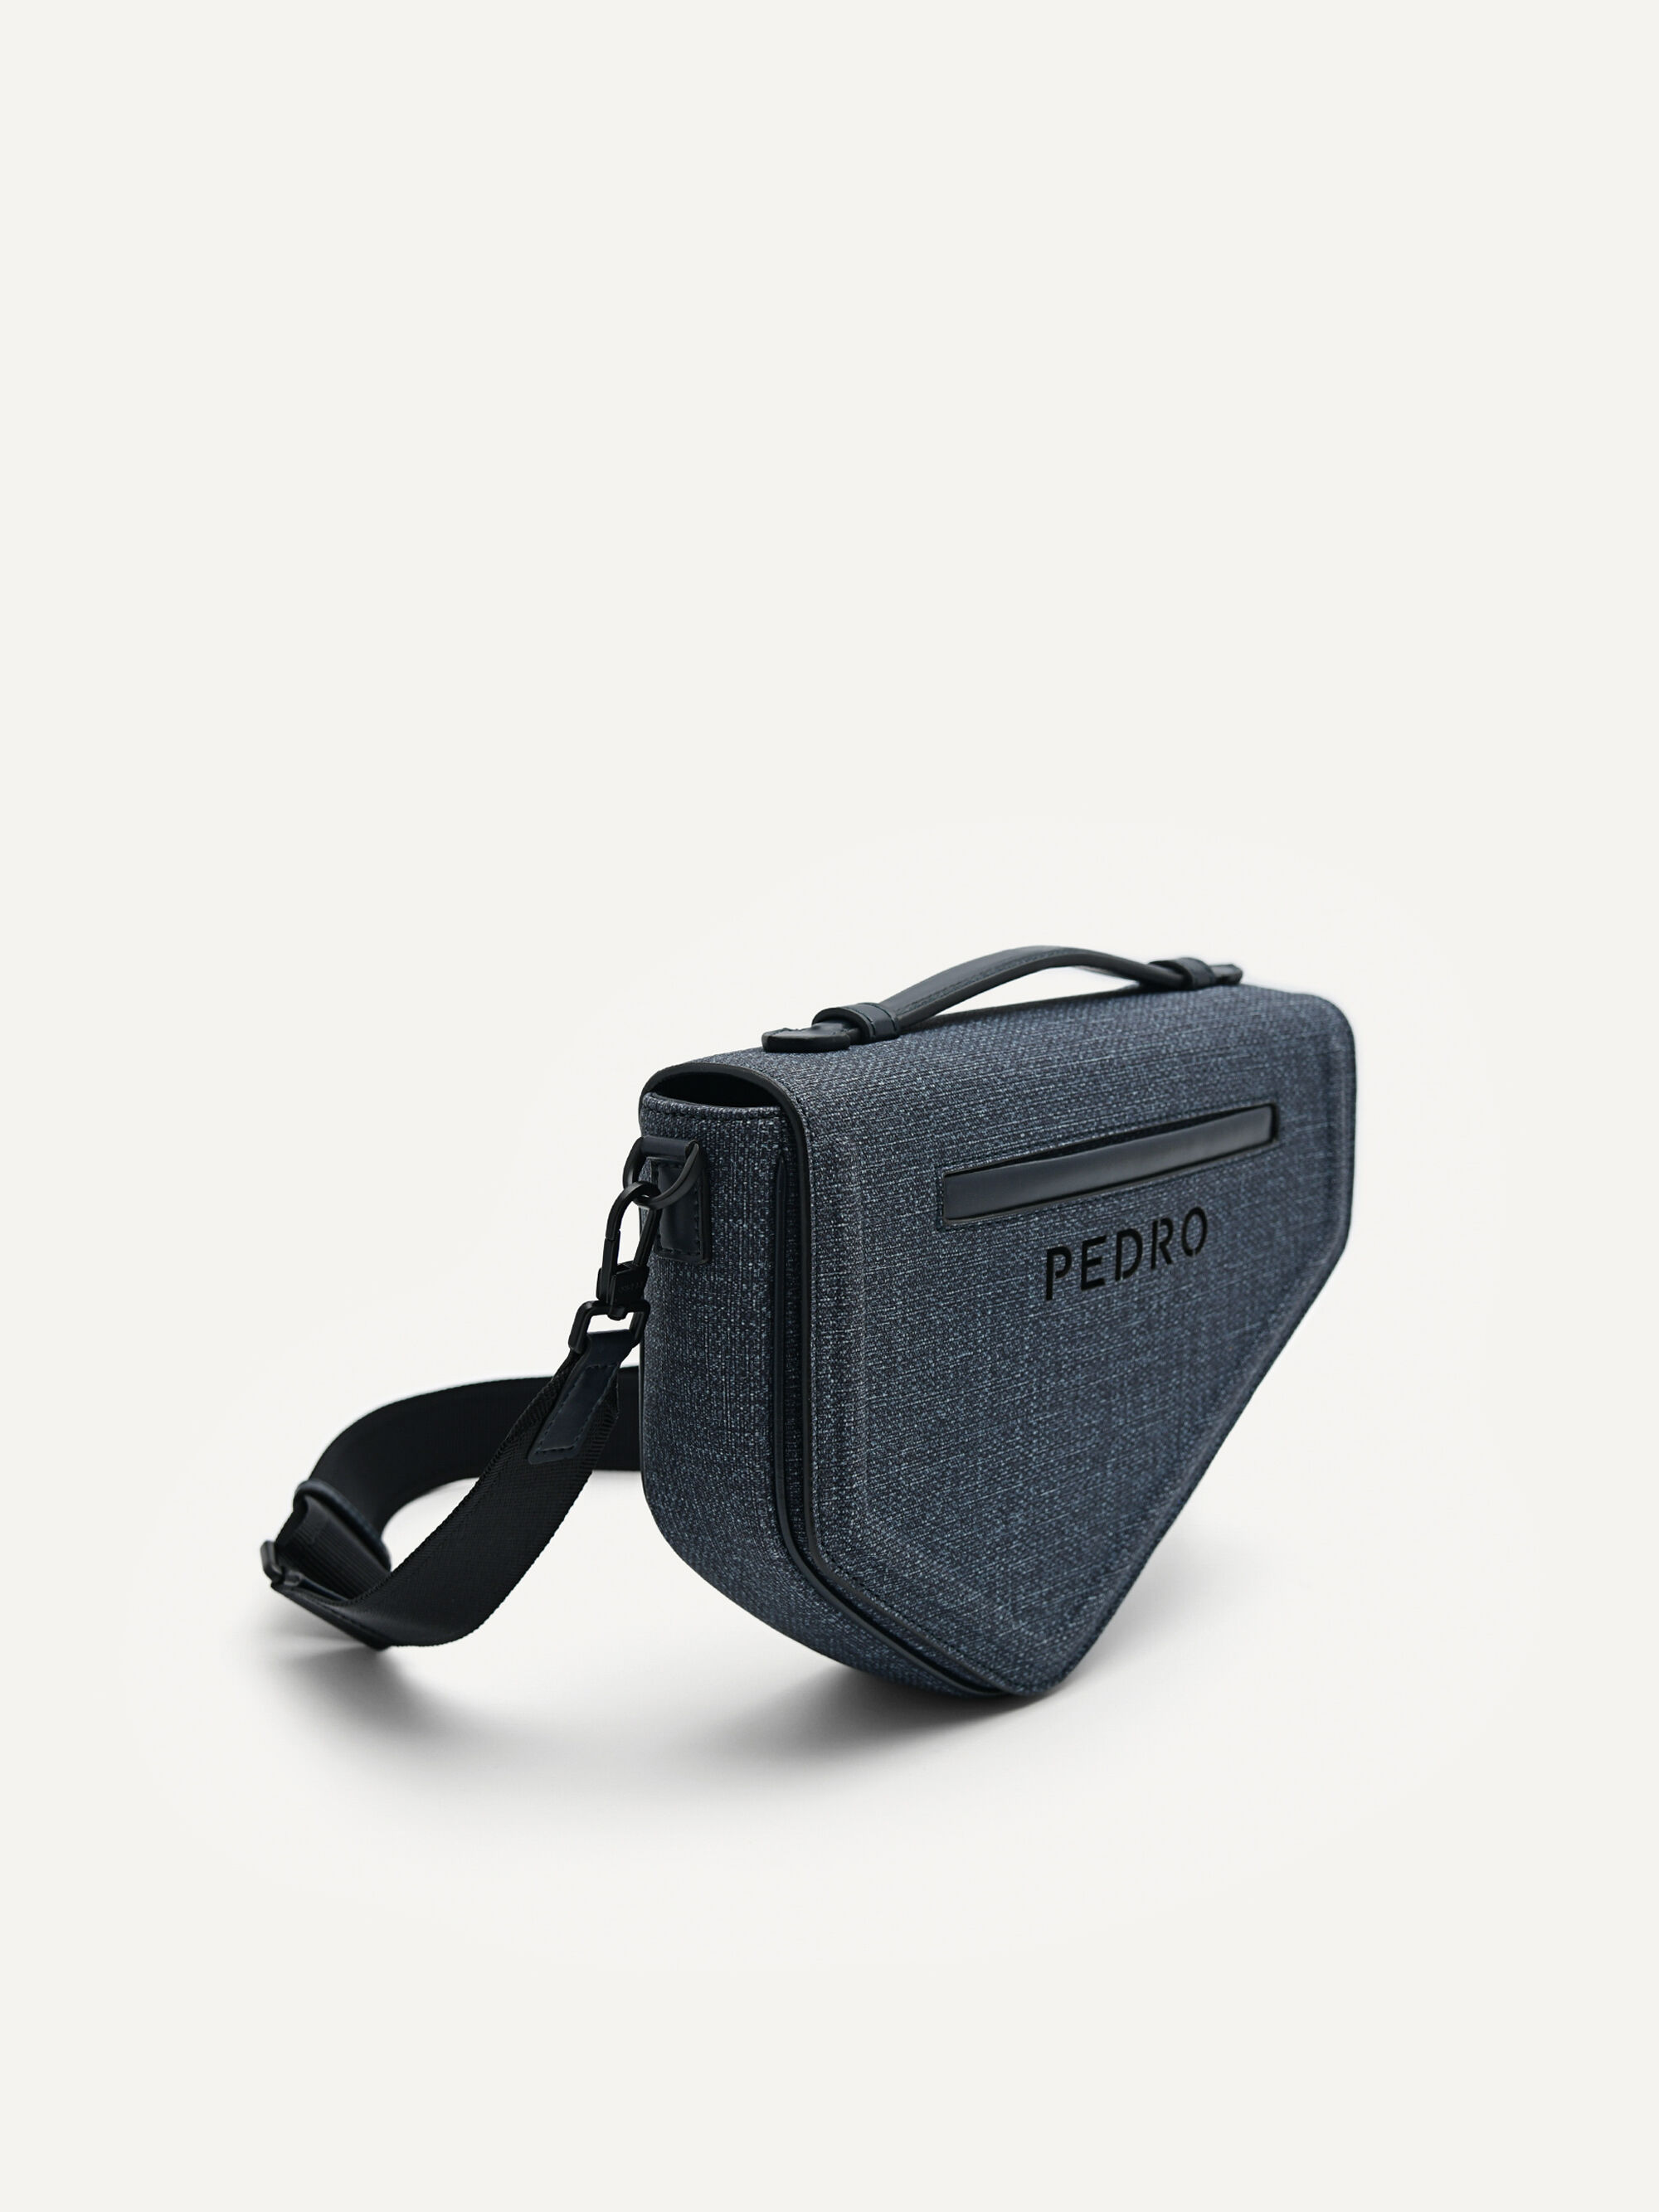 Pedro men sling bag.Get your own now!! #pedro #pedromalaysia